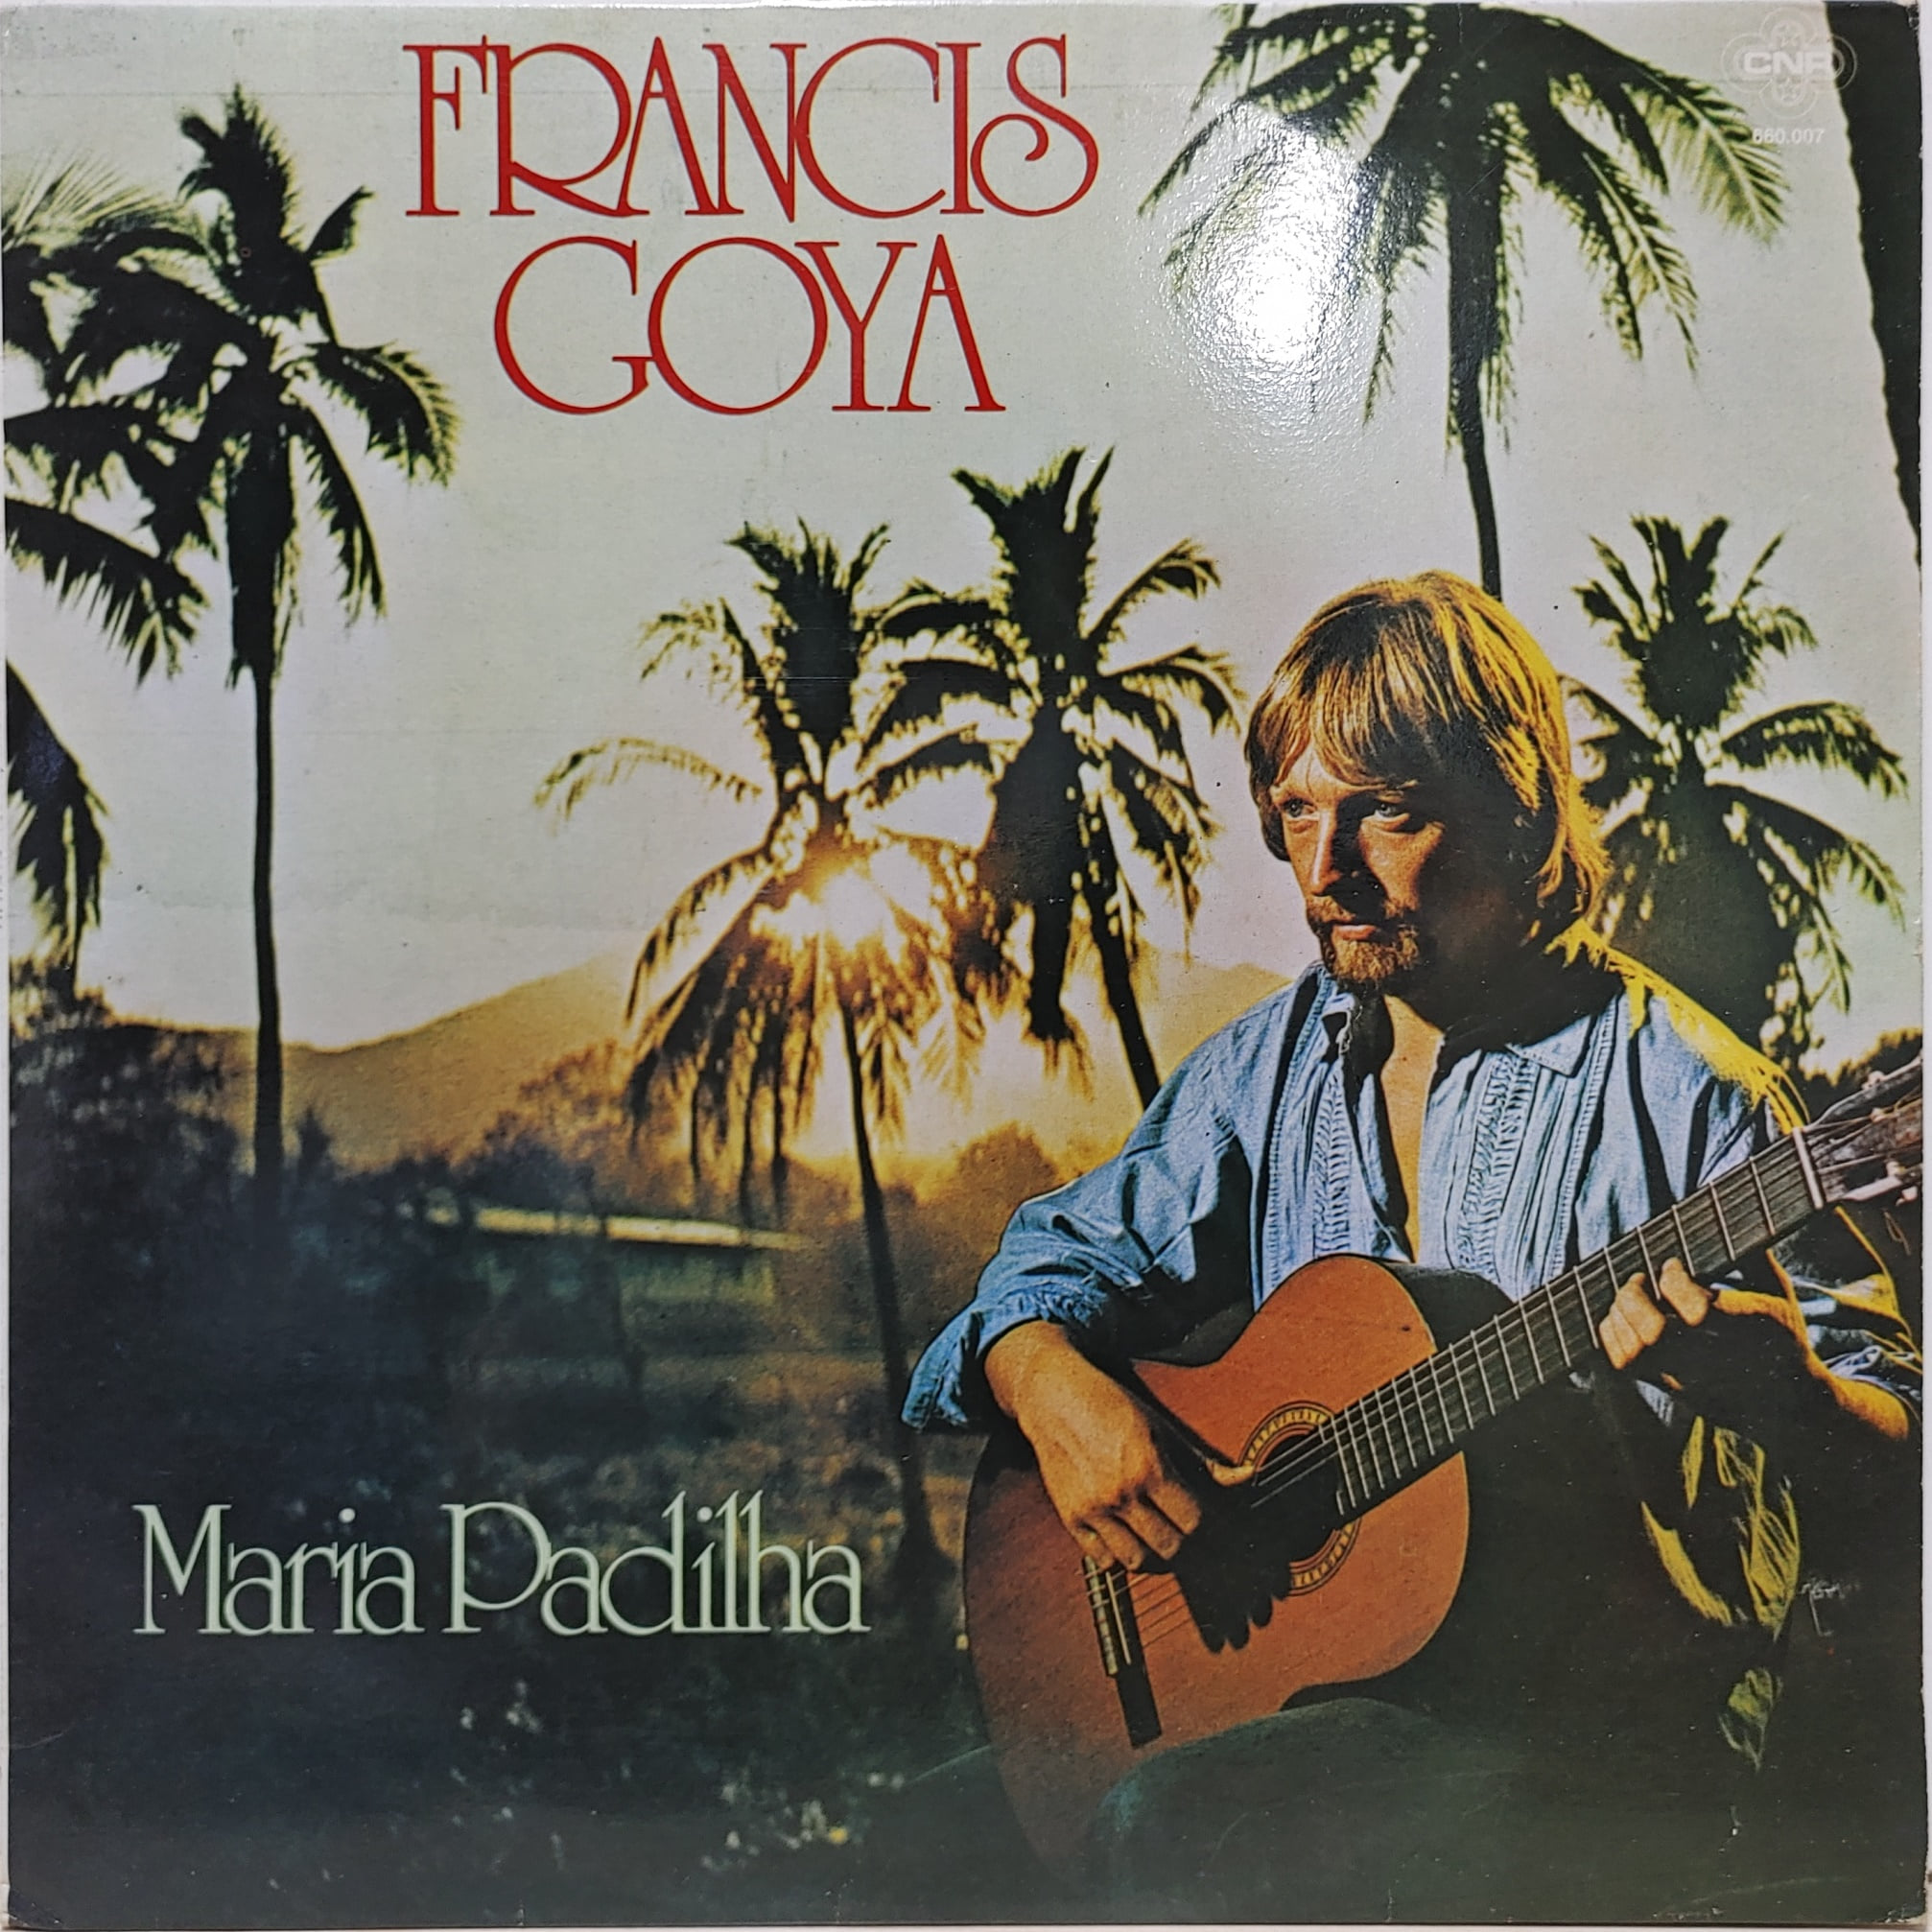 FRANCIS GOYA / MARIA PADILHA